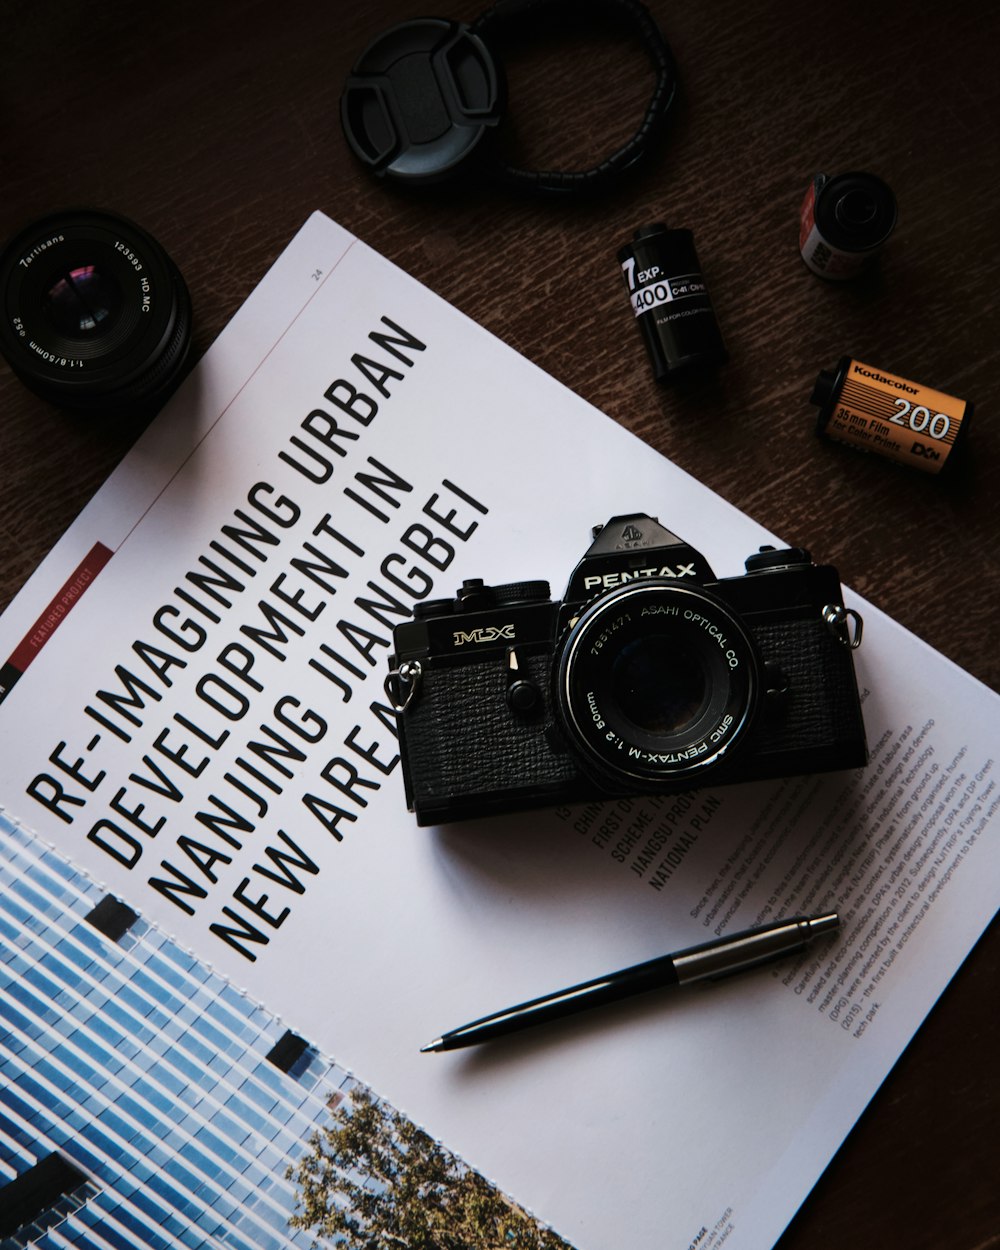 Fotocamera reflex digitale Nikon nera accanto a penna a scatto marrone e nera su carta bianca per stampante